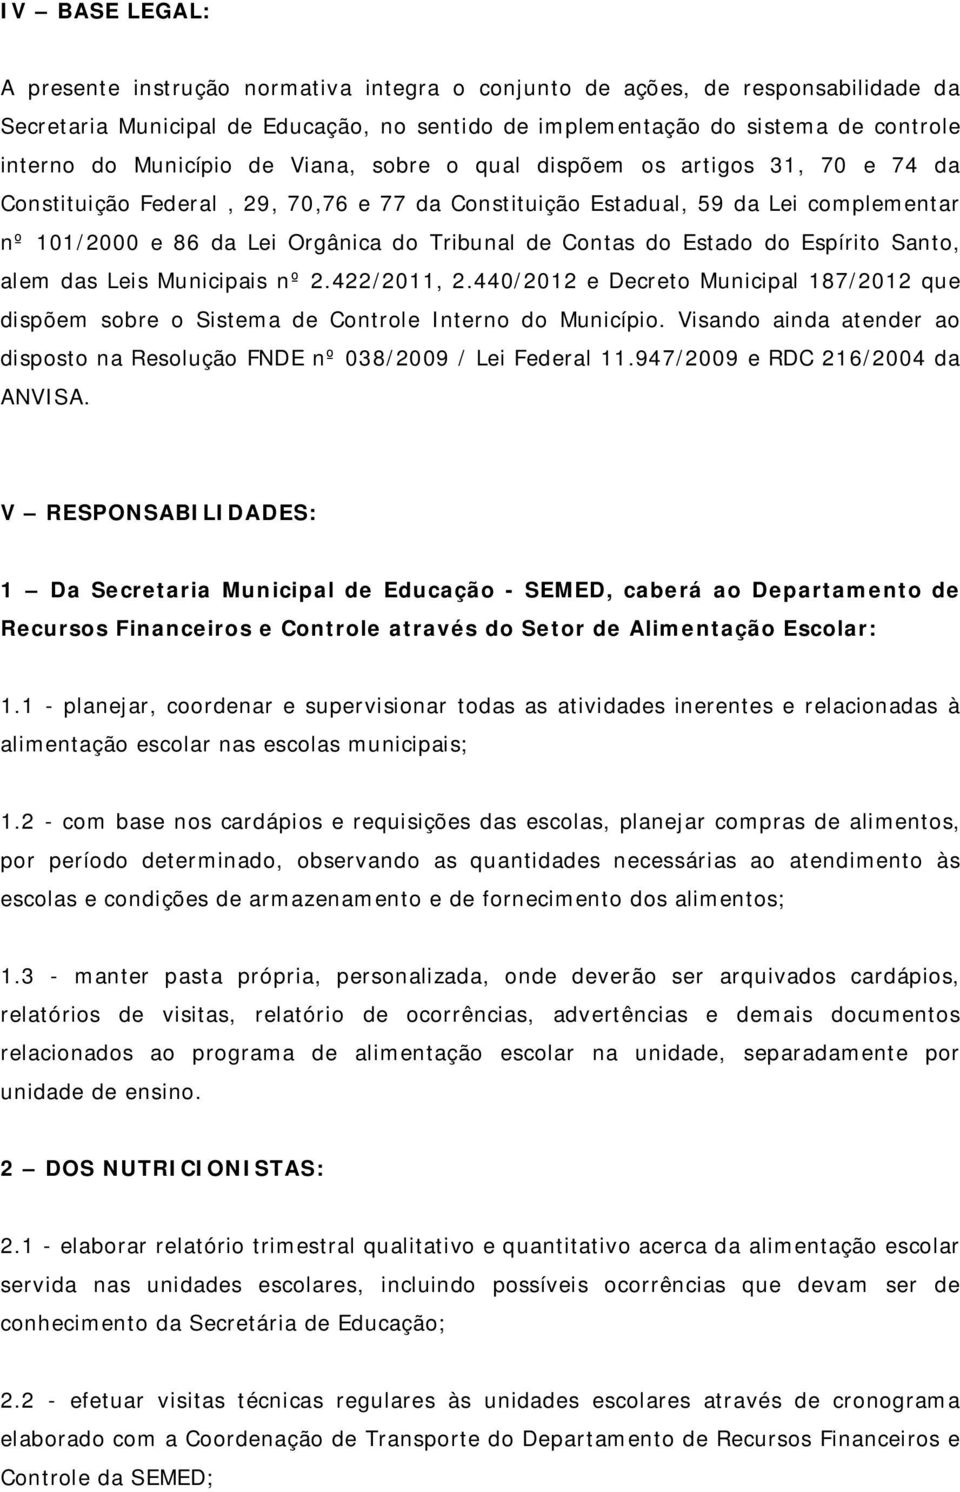 de Contas do Estado do Espírito Santo, alem das Leis Municipais nº 2.422/2011, 2.440/2012 e Decreto Municipal 187/2012 que dispõem sobre o Sistema de Controle Interno do Município.